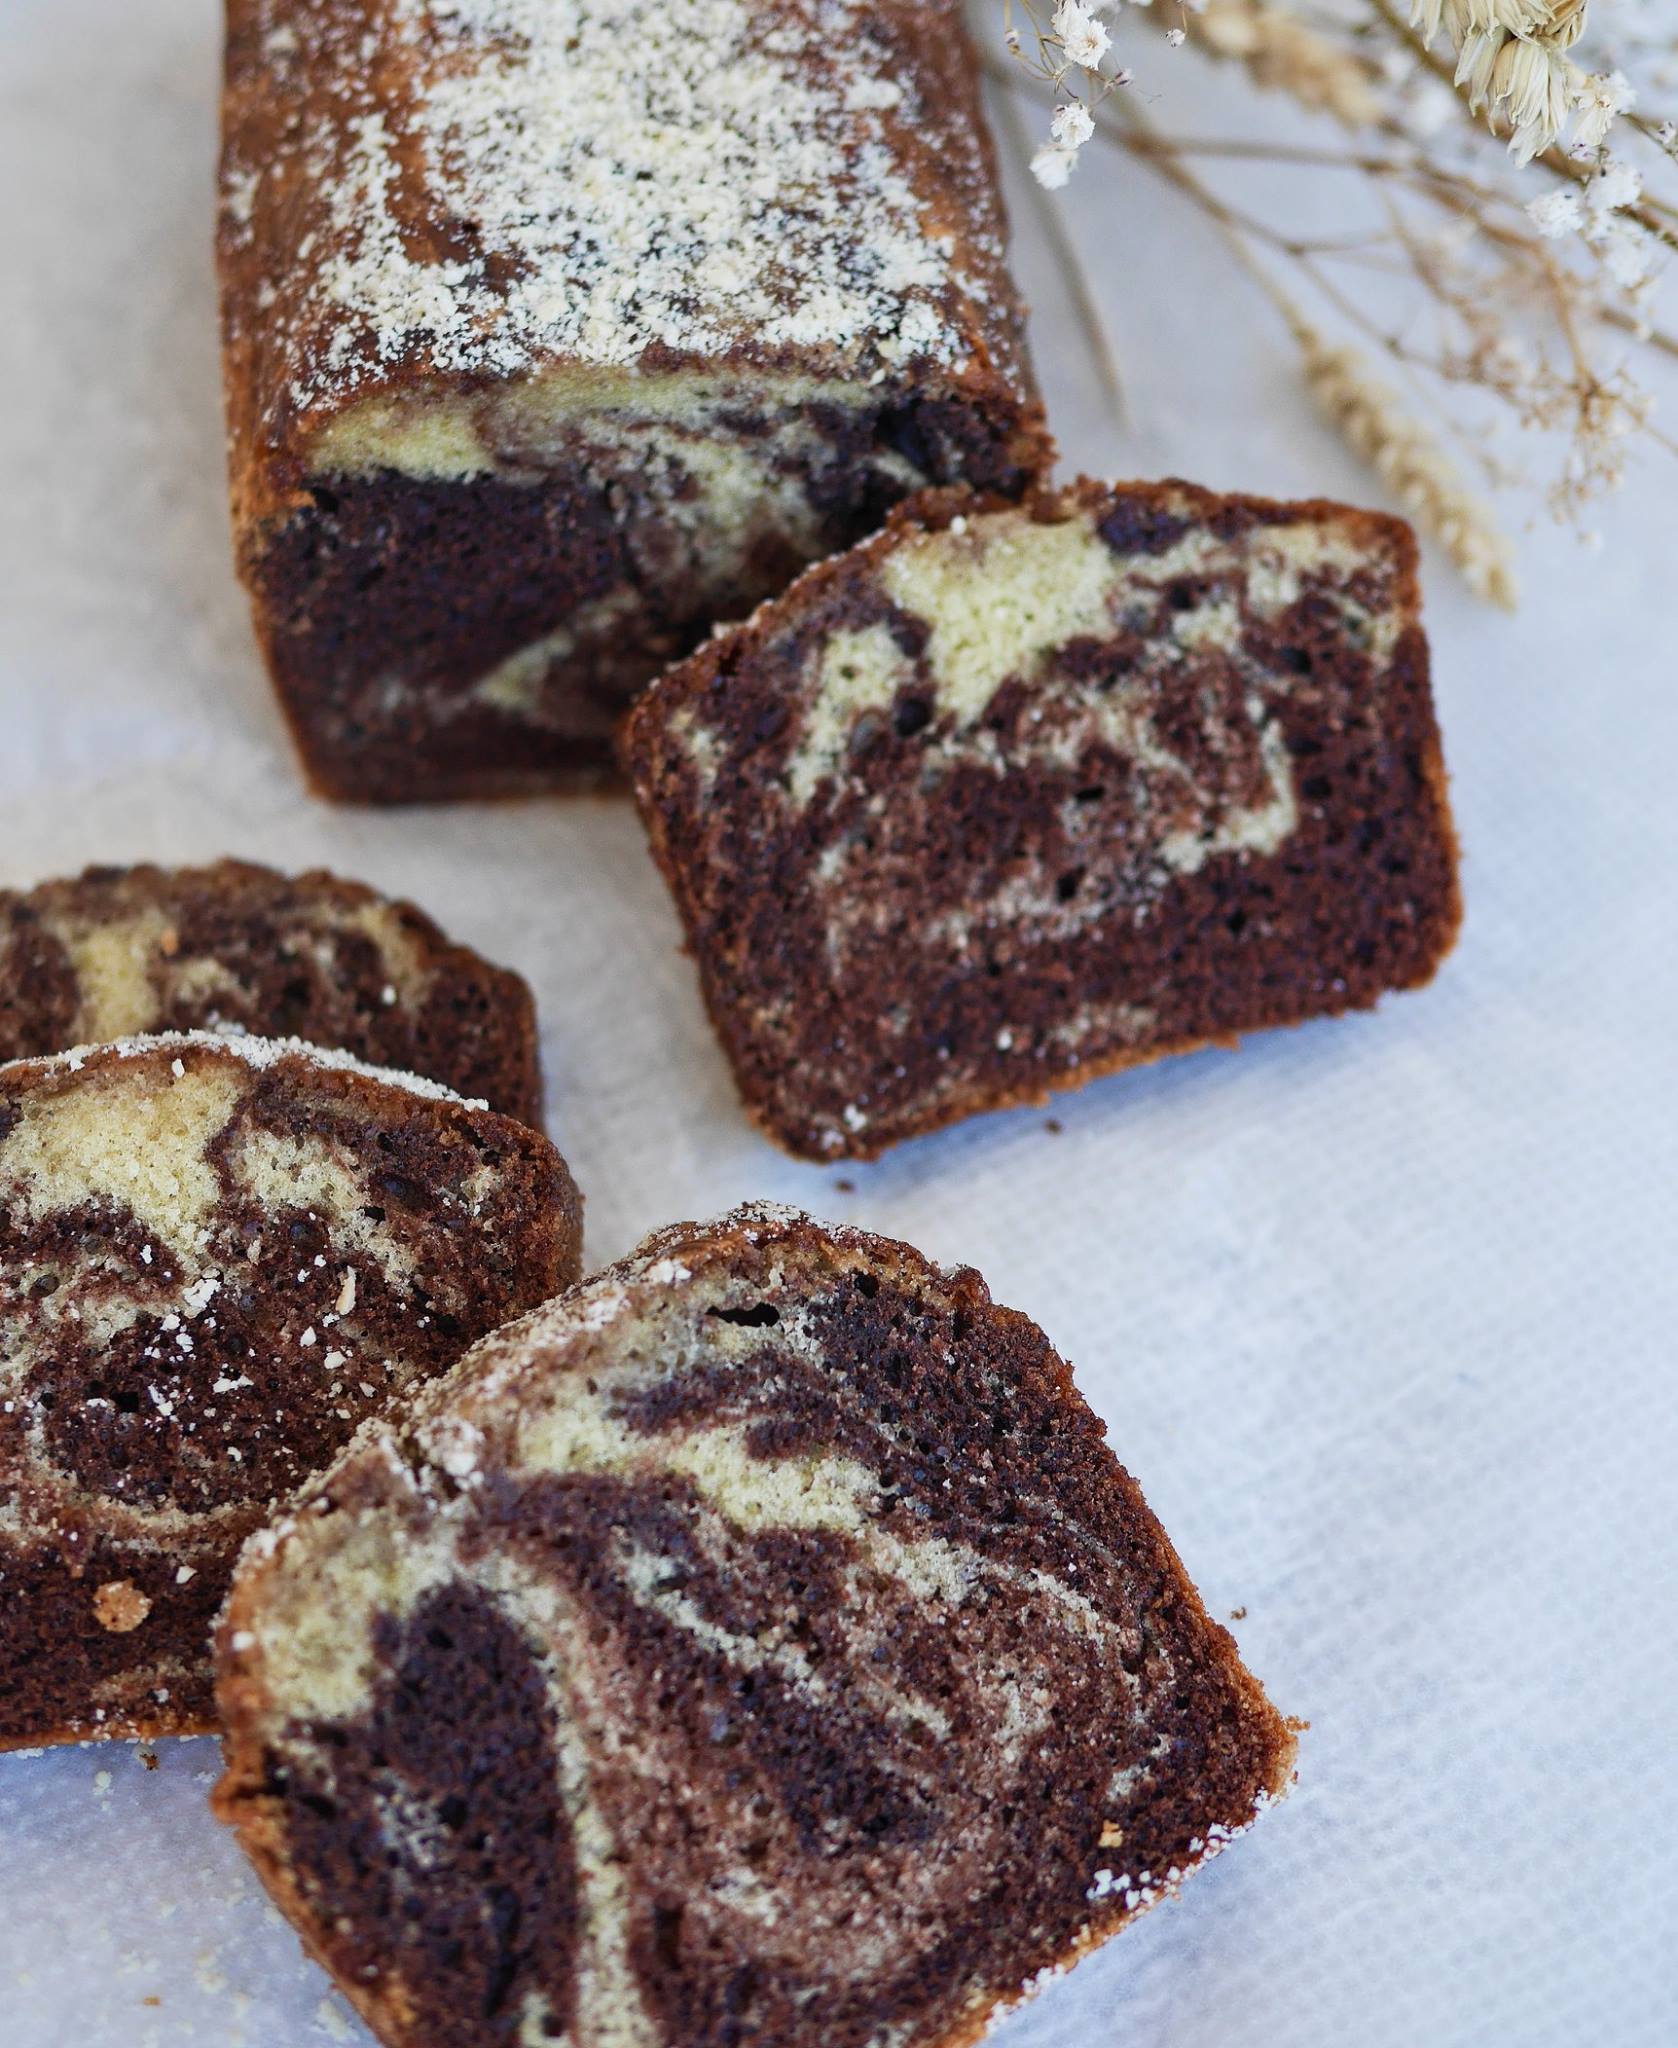 Cake marbré chocolat-vanille vegan et sans gluten délicieusement moelleux !